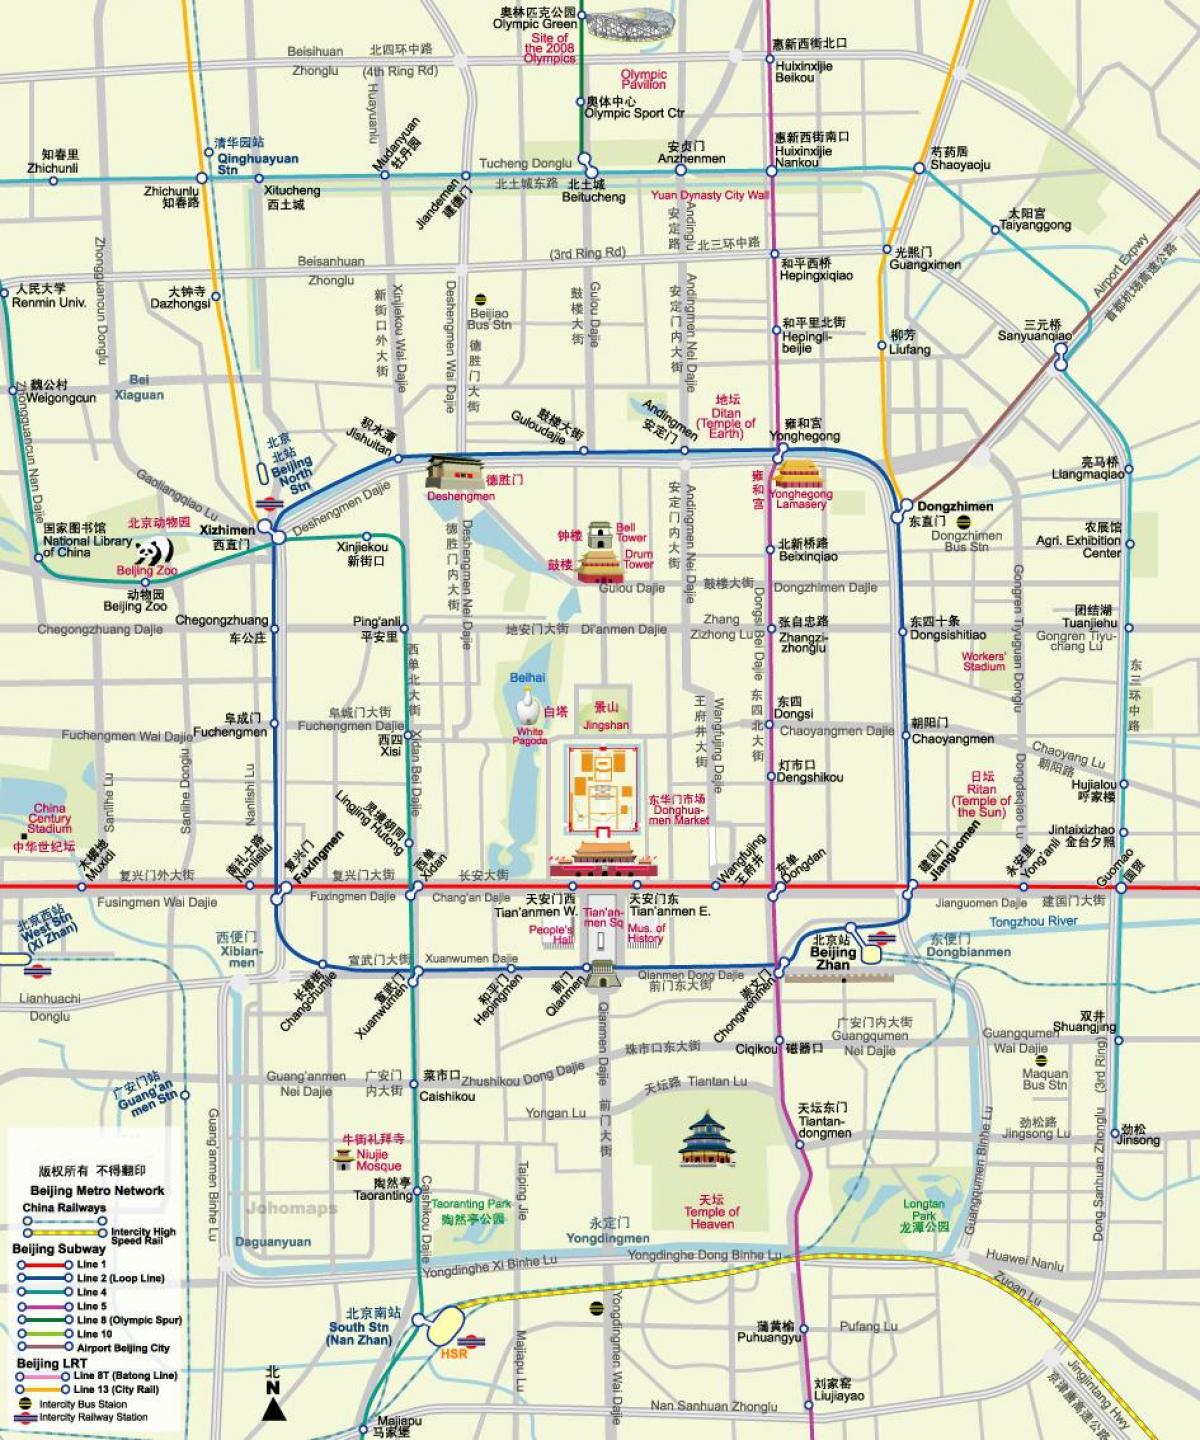 քարտեզ Պեկինի մետրոյի քարտեզ տեսարժան վայրերին